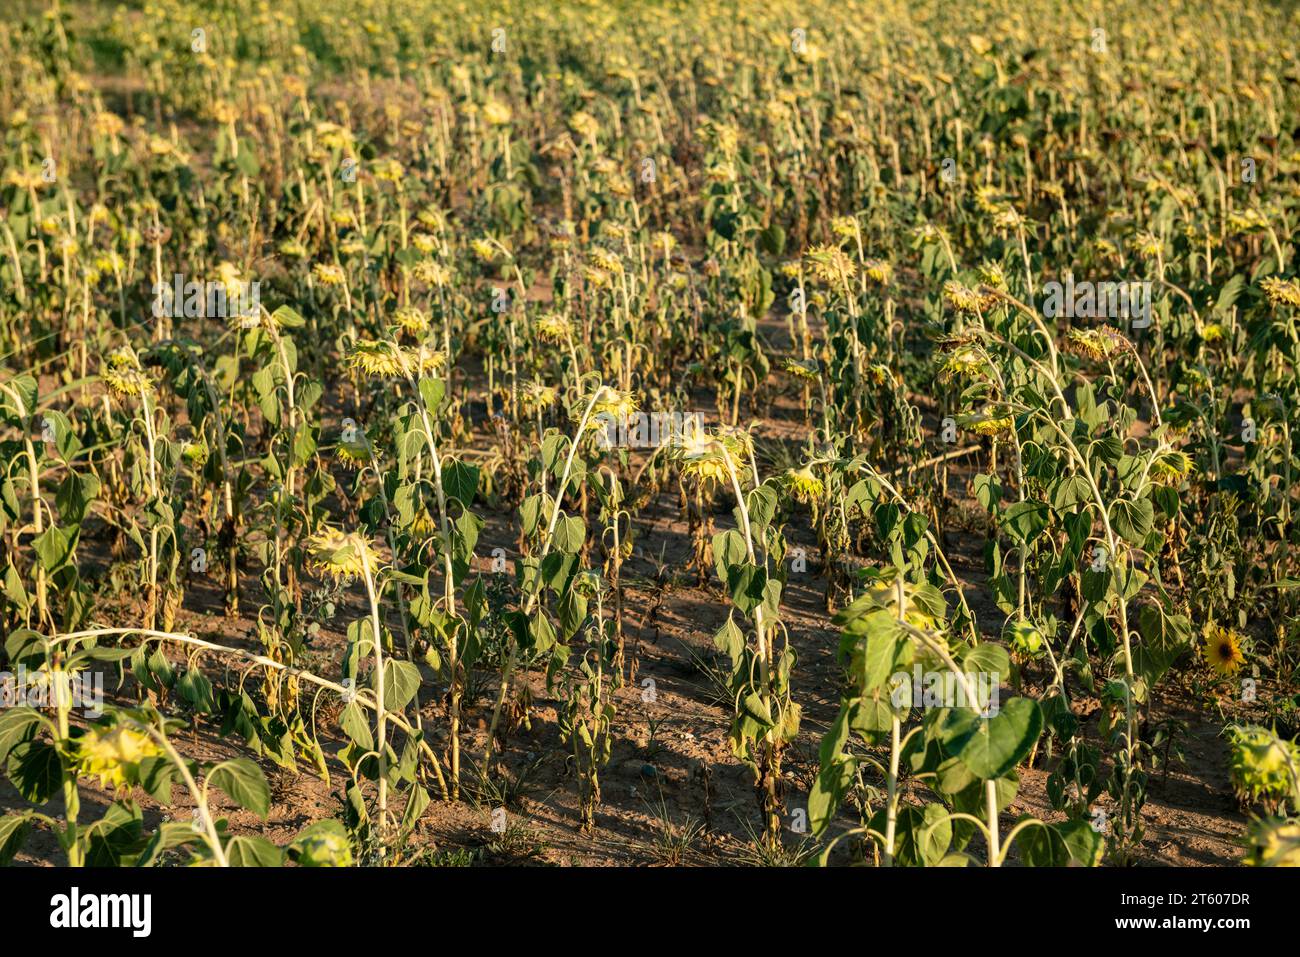 Trockene und trockene Sonnenblumenfelder haben aufgrund der Klimakrise und der Dürre Probleme in der gesamten landwirtschaftlichen Welt verursacht, was zu produktionskrisen geführt hat Stockfoto